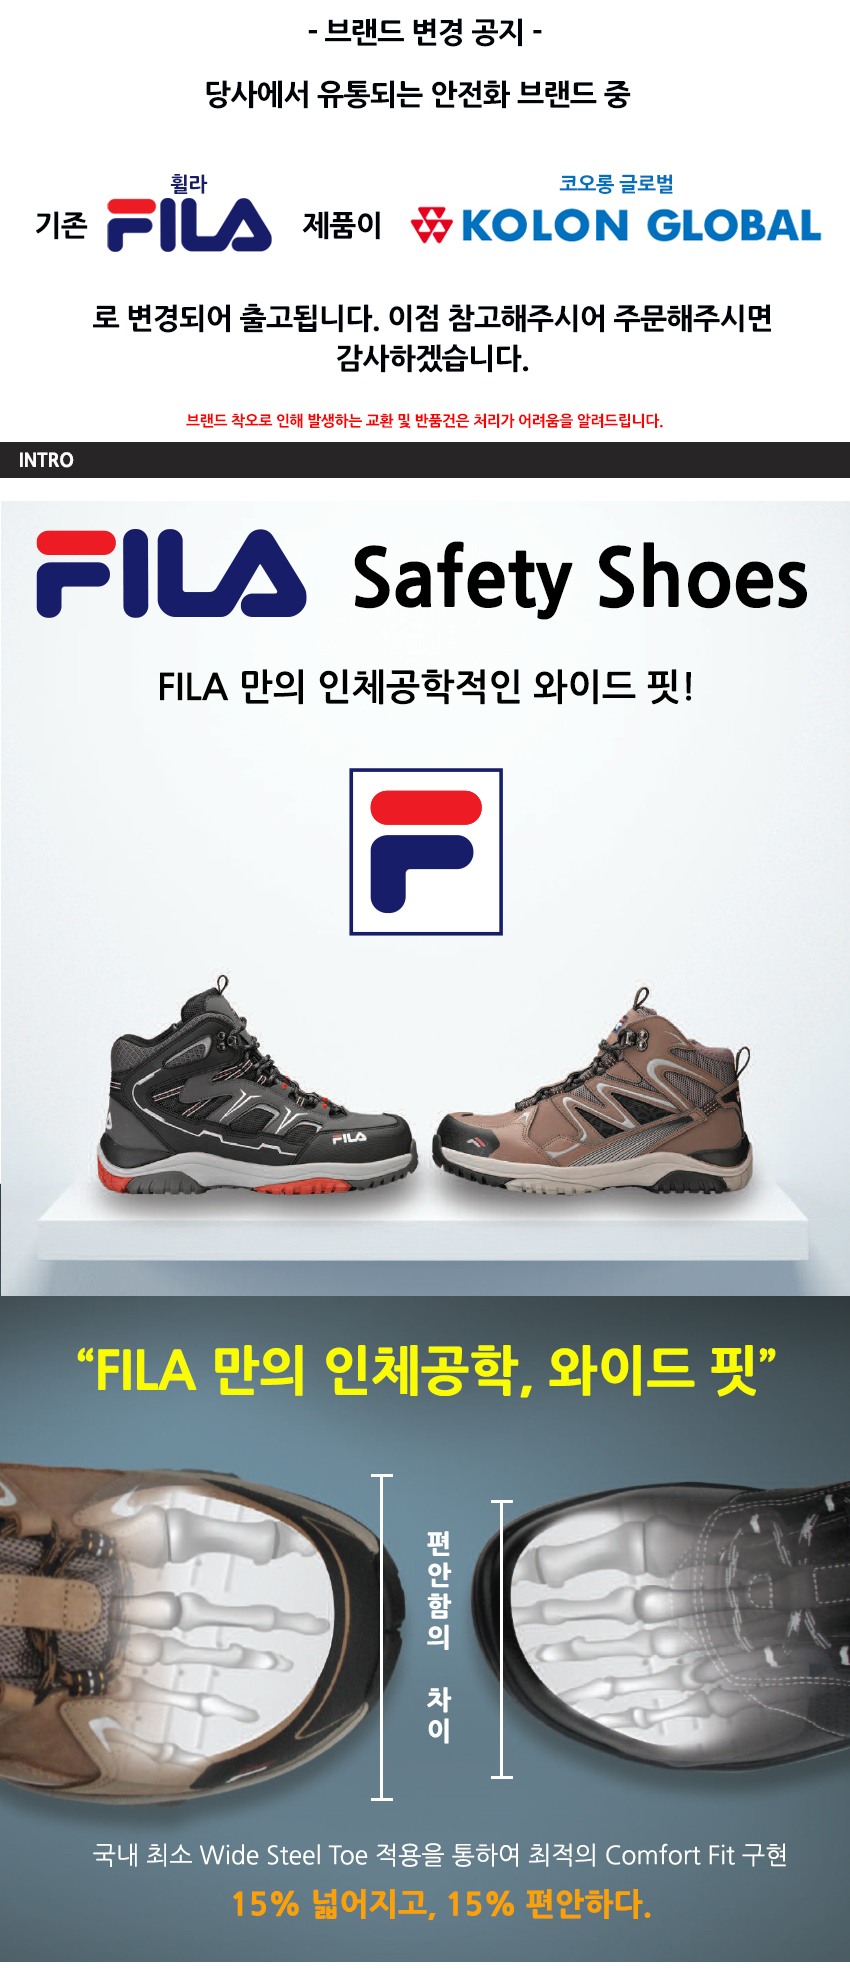 - [Fila]FILA /Safety